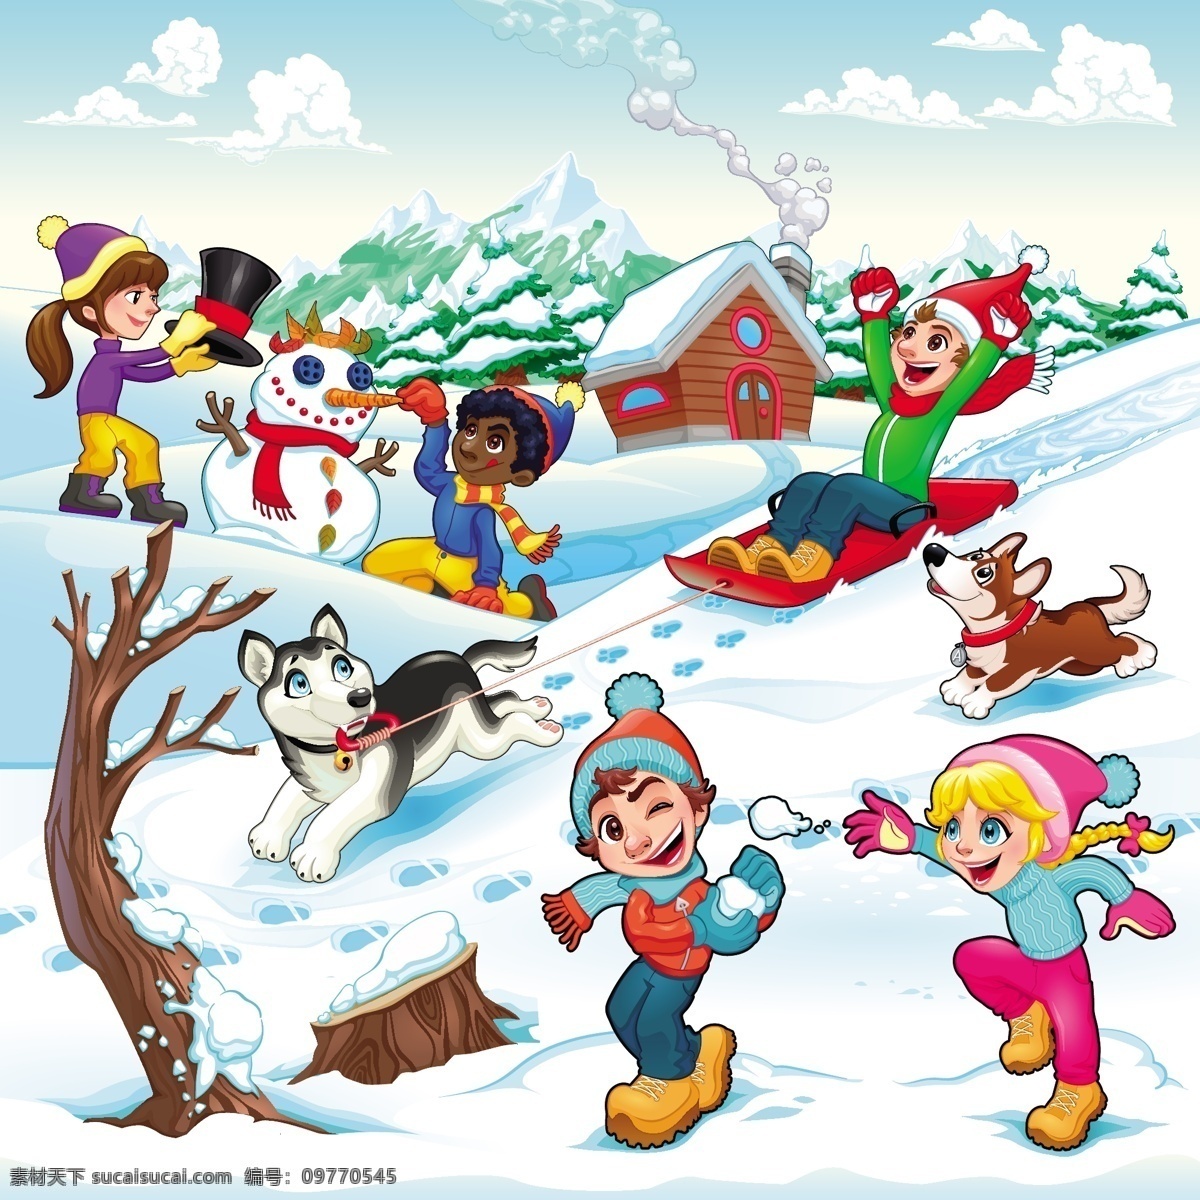 有趣 冬 景 孩子 狗 的卡 通 插画 矢量图 圣诞节 树 冬天 雪 爱 房子 家庭 自然 卡通 山 学生 漫画 风景 色彩 雪人 假日 奔跑